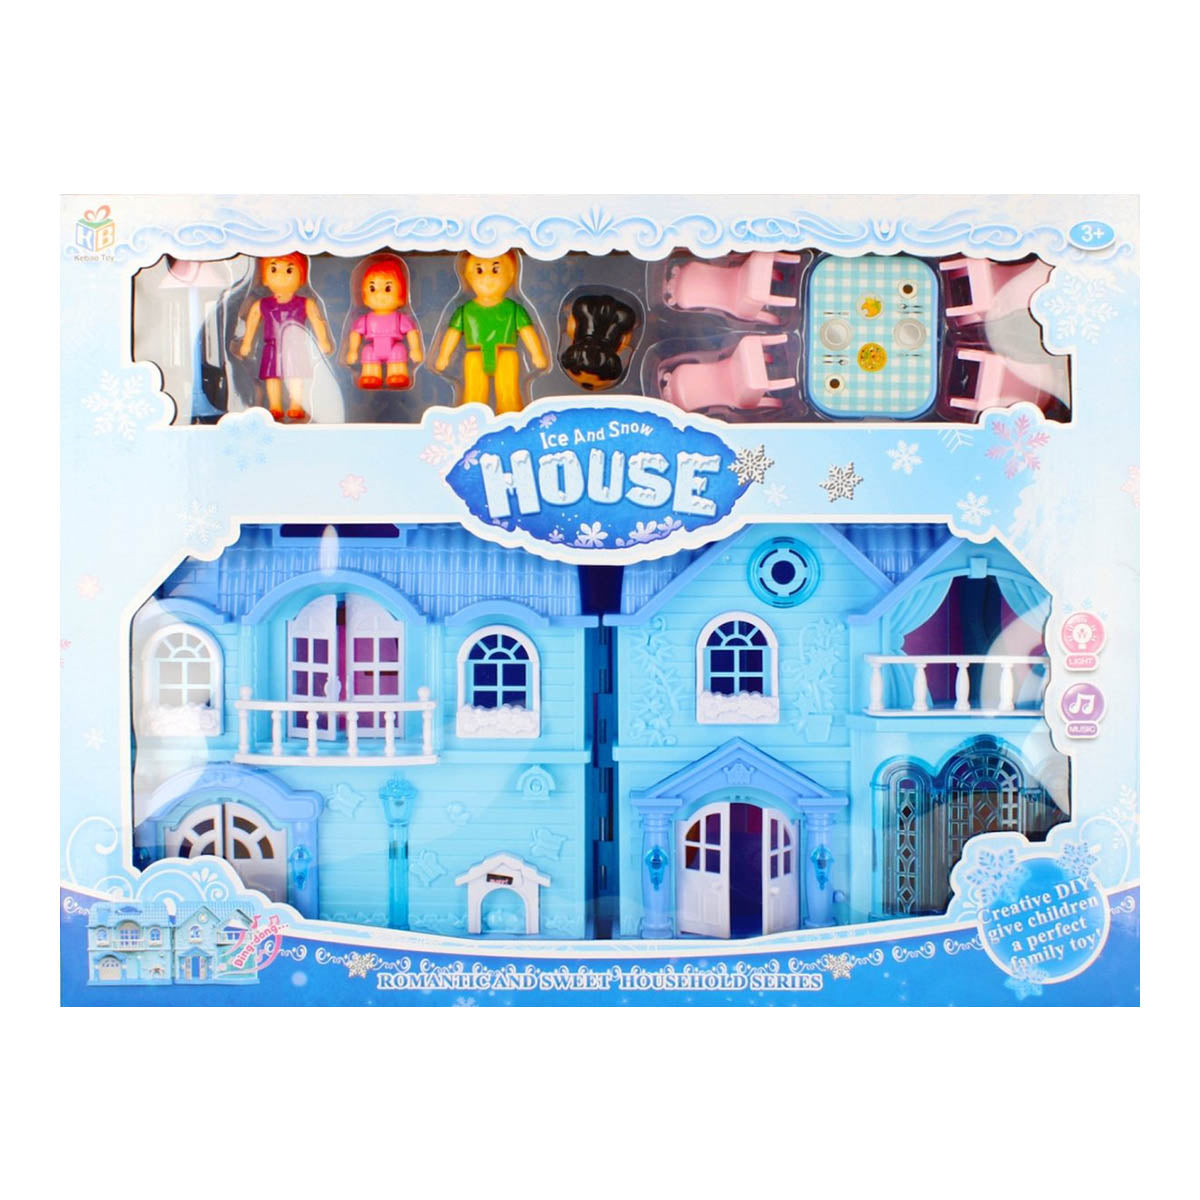 Ariko Dollhouse My New Home Snow and Ice Series - Medium - Spectacle de musique et de lumière - comprenant un dossier de jardin et des meubles de cuisine et de chambre - comprenant 2 piles AA de Philips